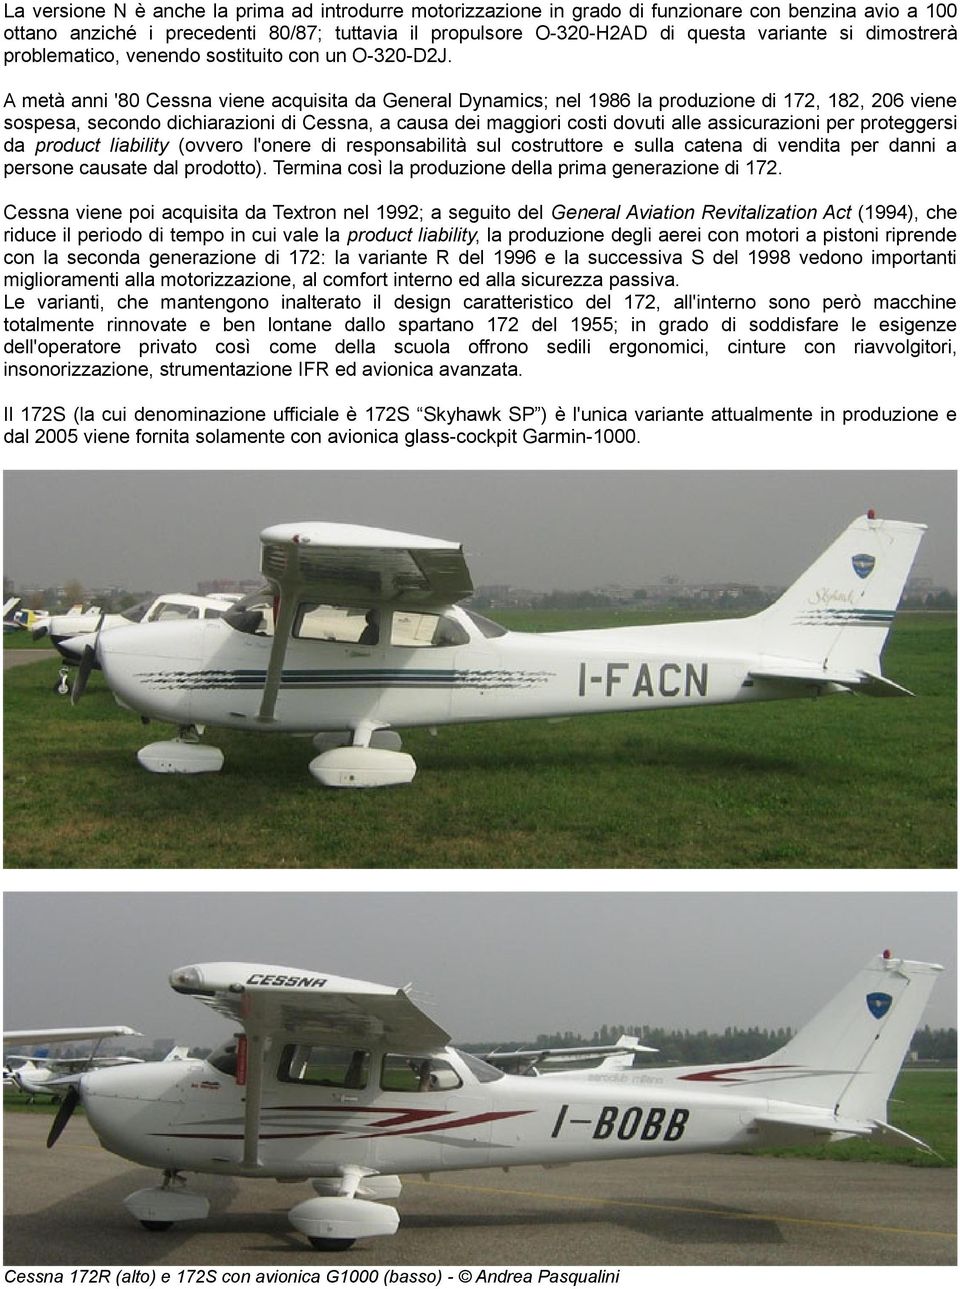 A metà anni '80 Cessna viene acquisita da General Dynamics; nel 1986 la produzione di 172, 182, 206 viene sospesa, secondo dichiarazioni di Cessna, a causa dei maggiori costi dovuti alle